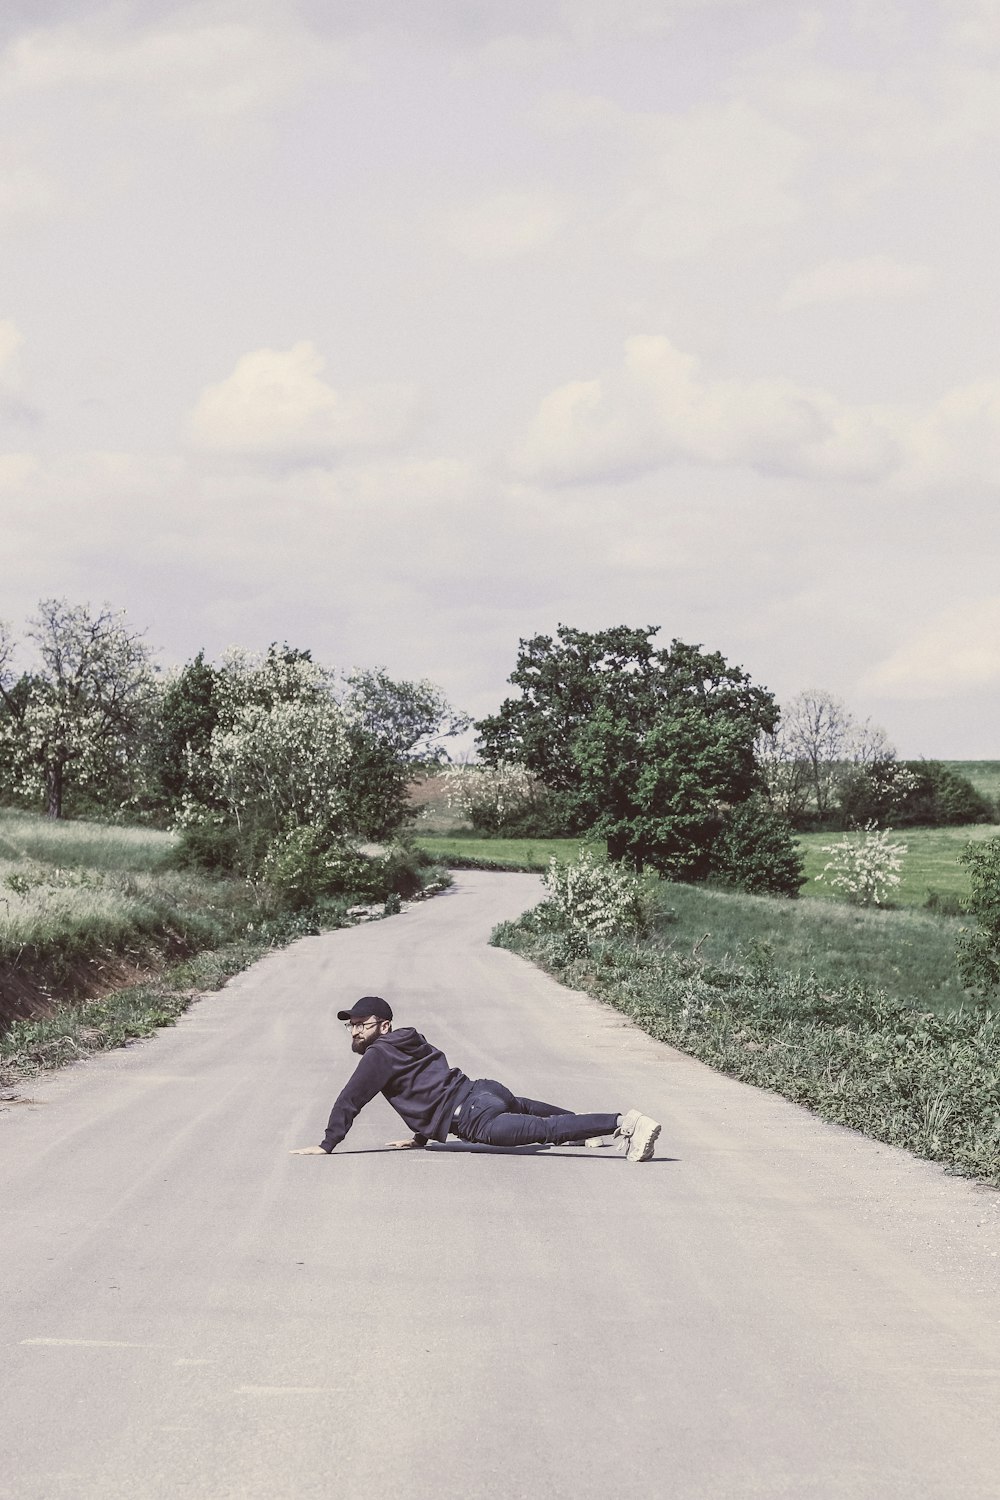 homme en veste noire couché sur une route en béton gris pendant la journée